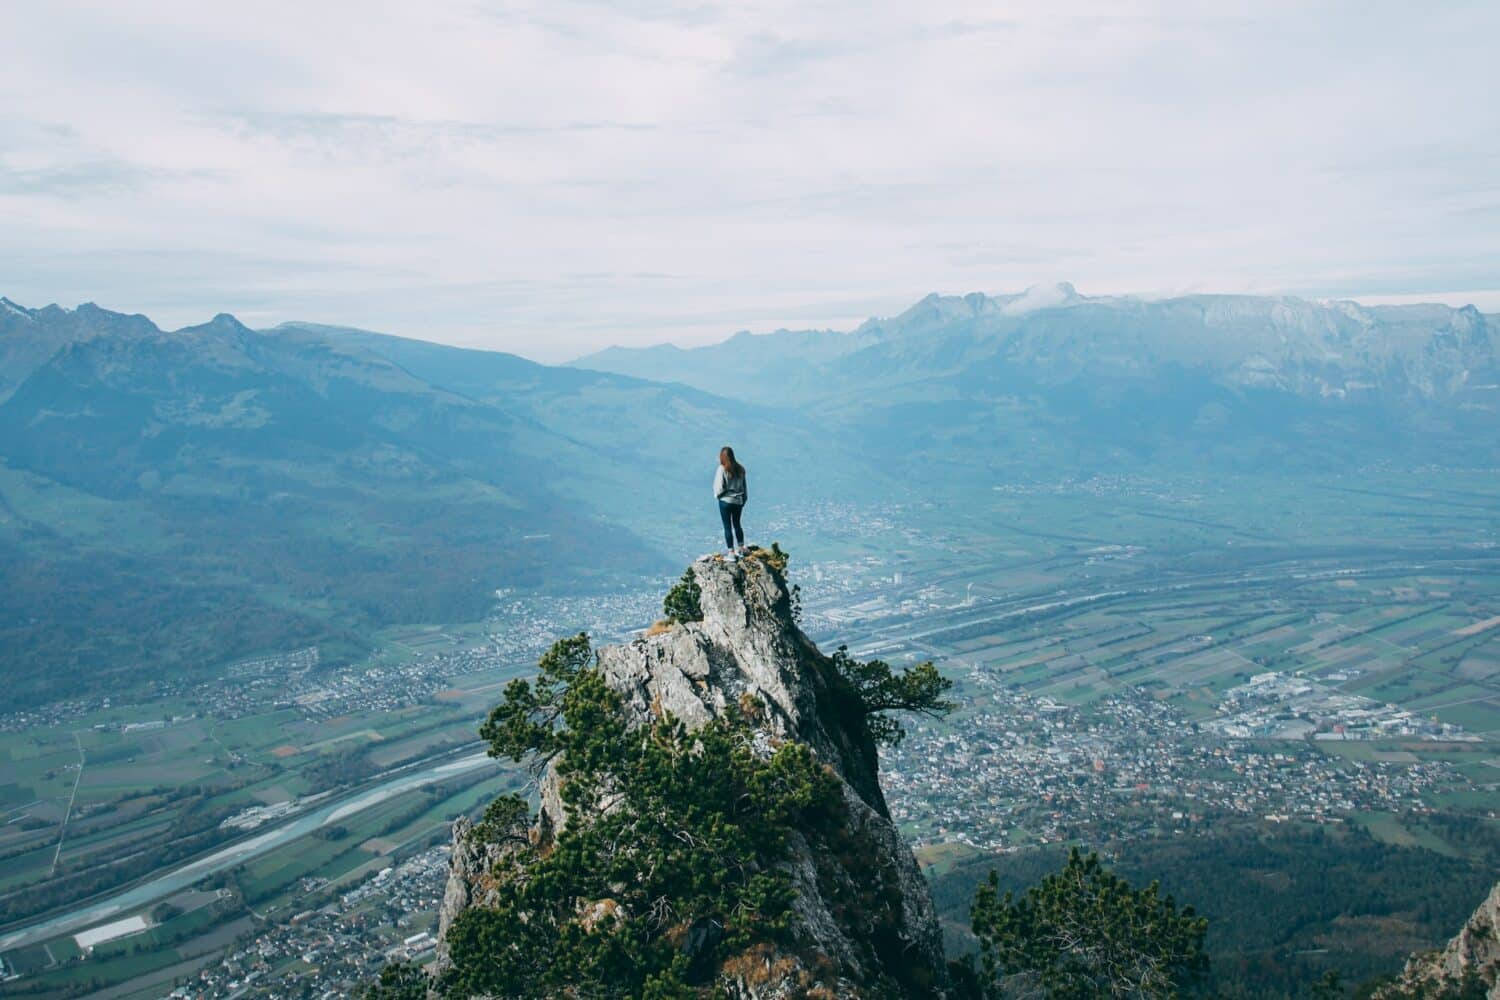 Mulher no topo de uma montanha olhando para a cidade em frente. - Foto: Oliver Schwendener via Unsplash